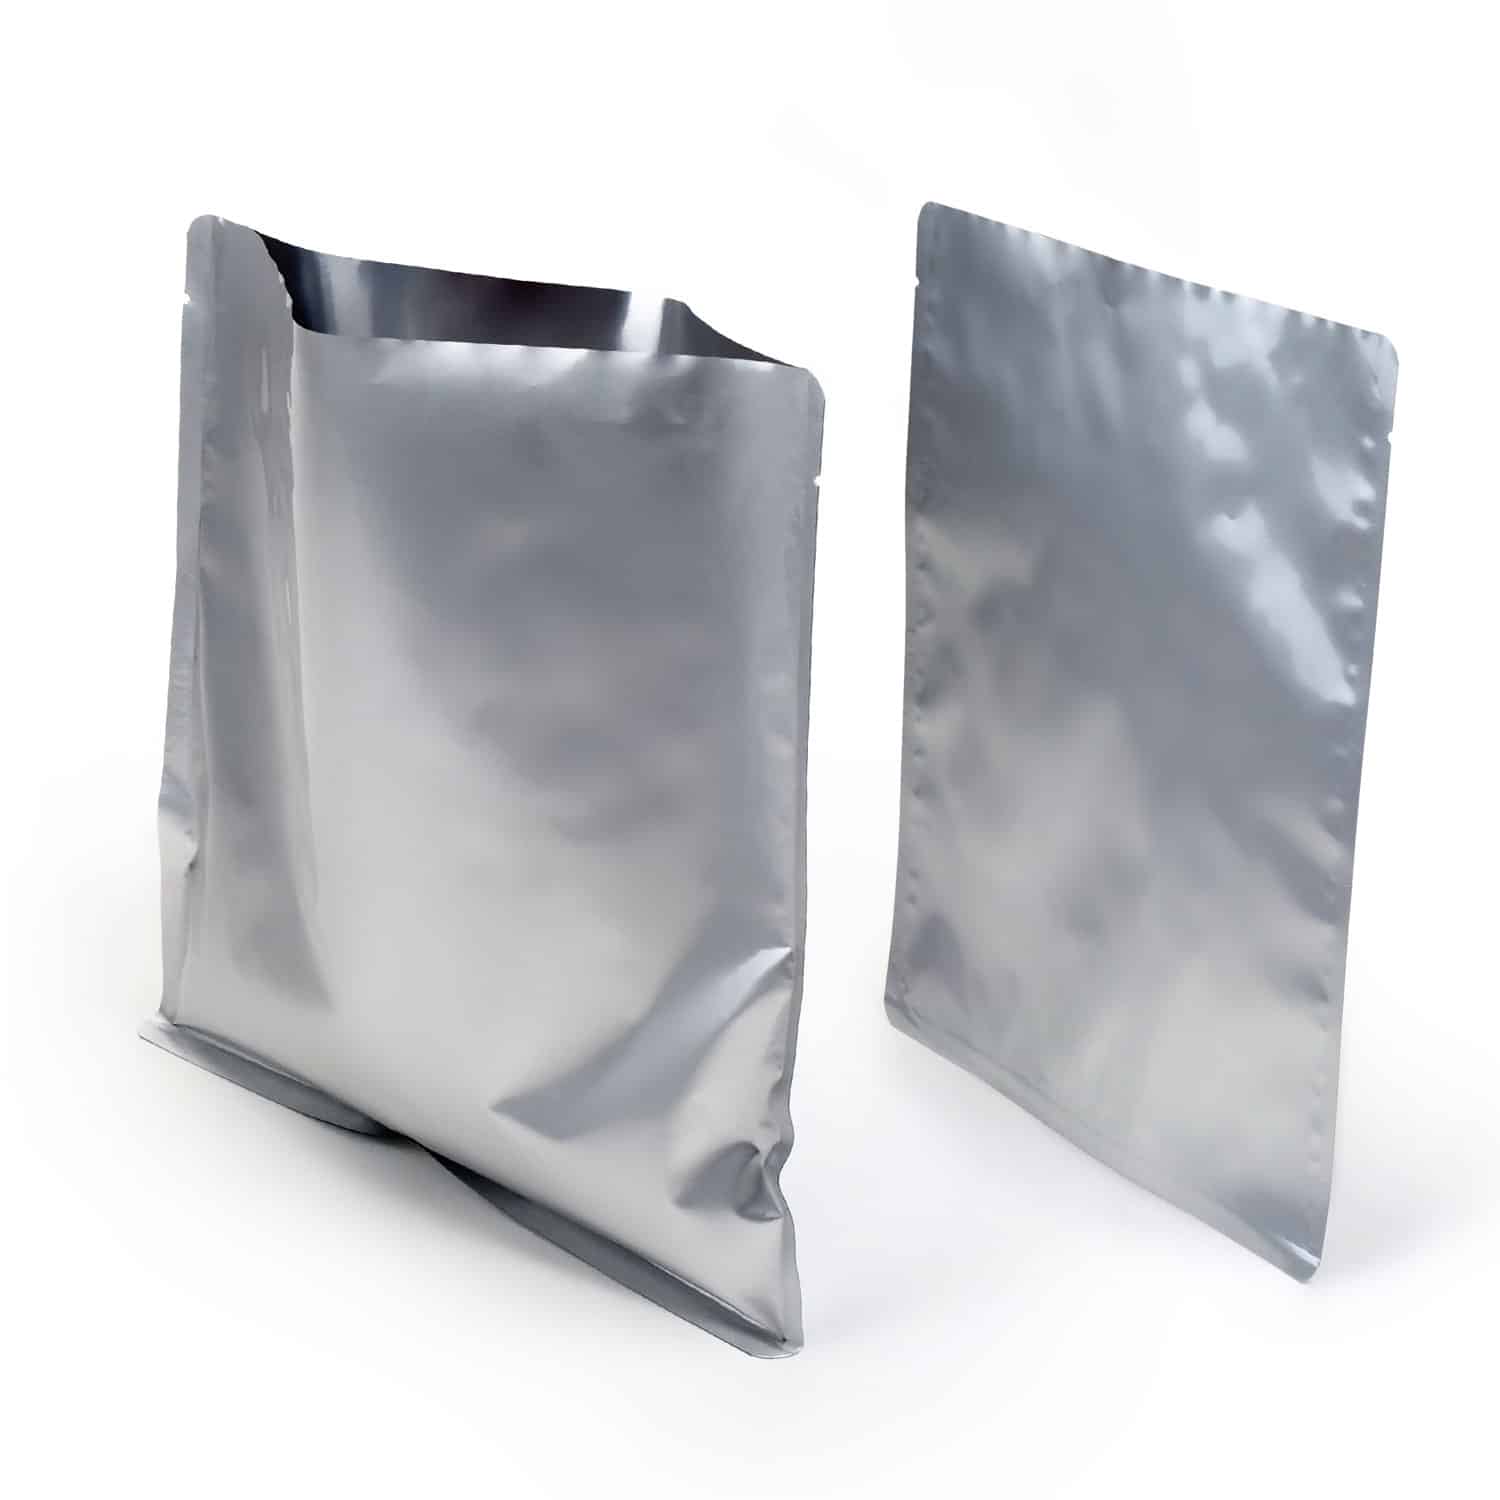 Soude sac et sachet plastique 1000mm KF sans couperet - New